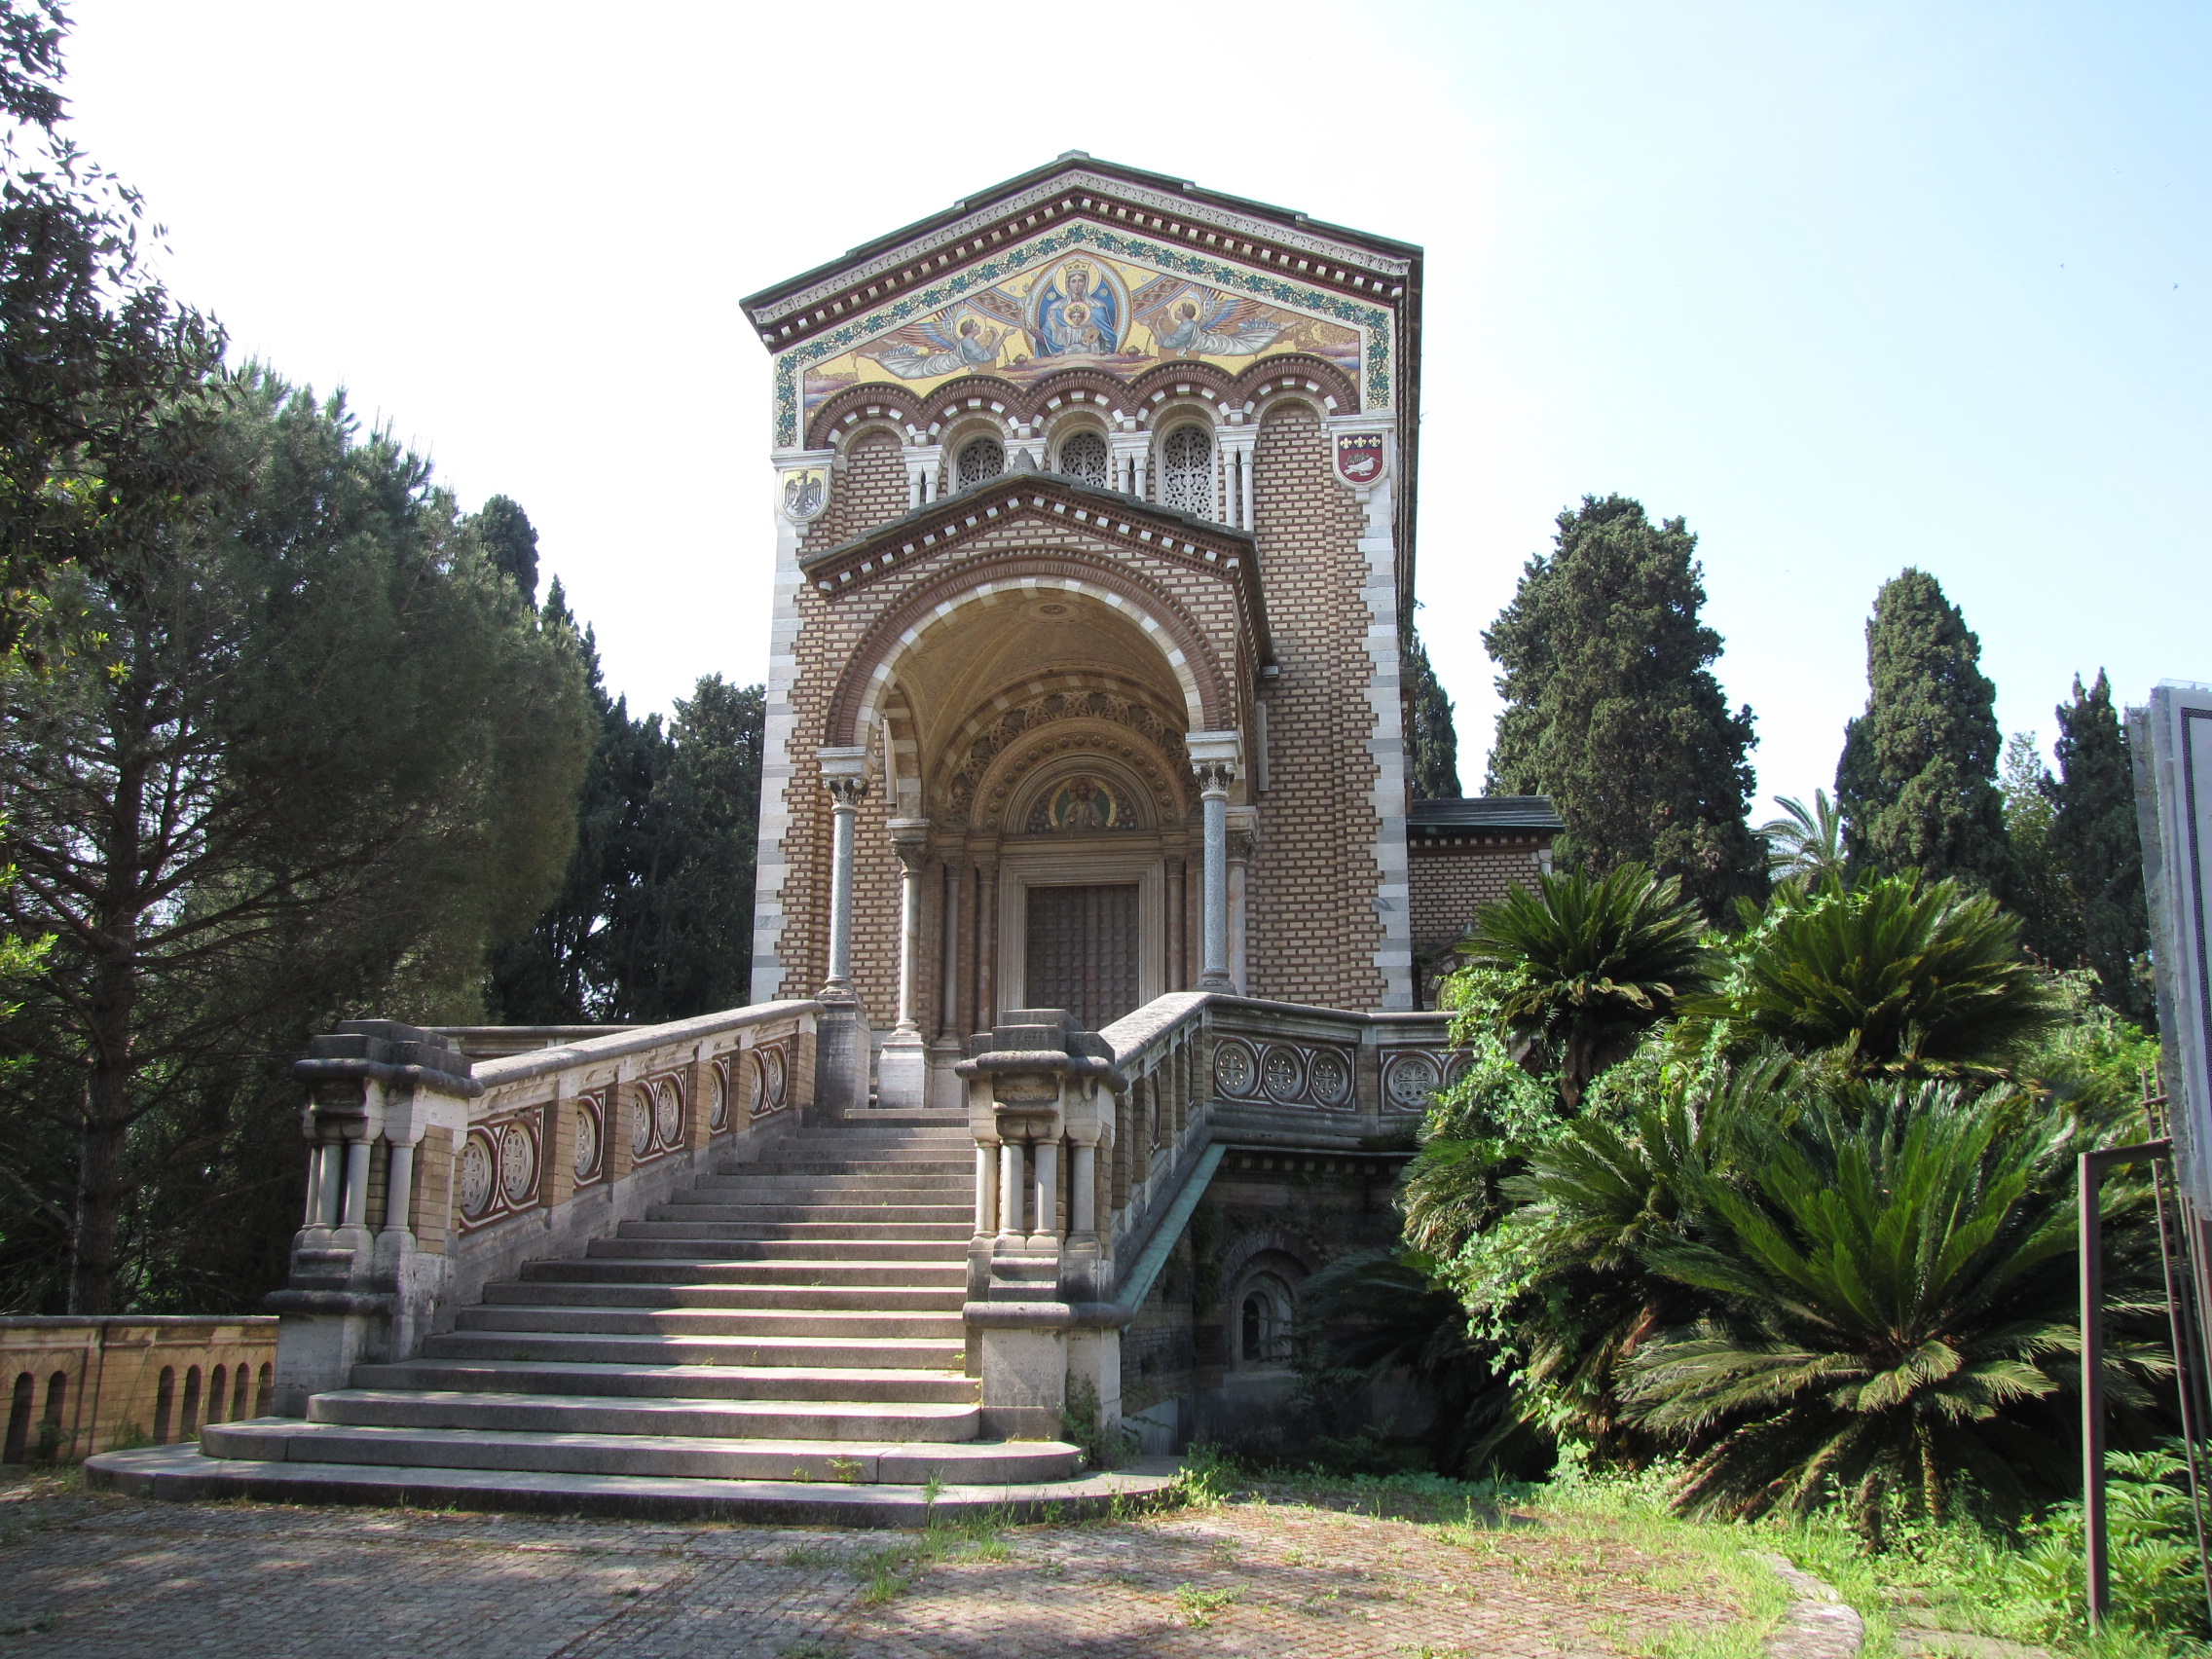 Cover Villa Doria Pamphilj